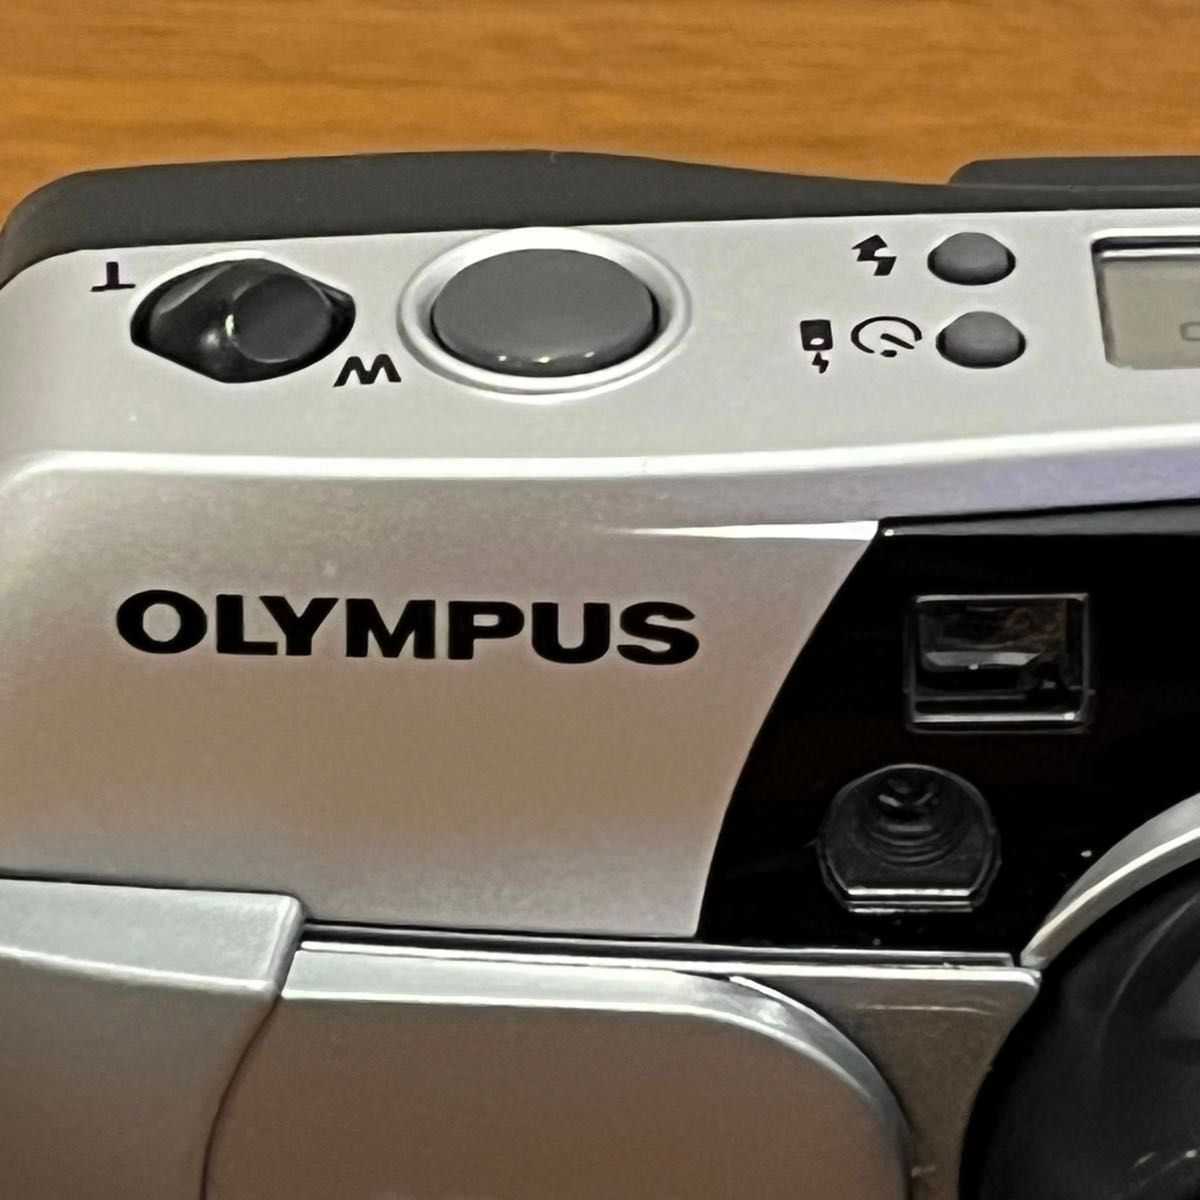 OLYMPUS オリンパス OZ 105R フィルムカメラ　used 通電確認○